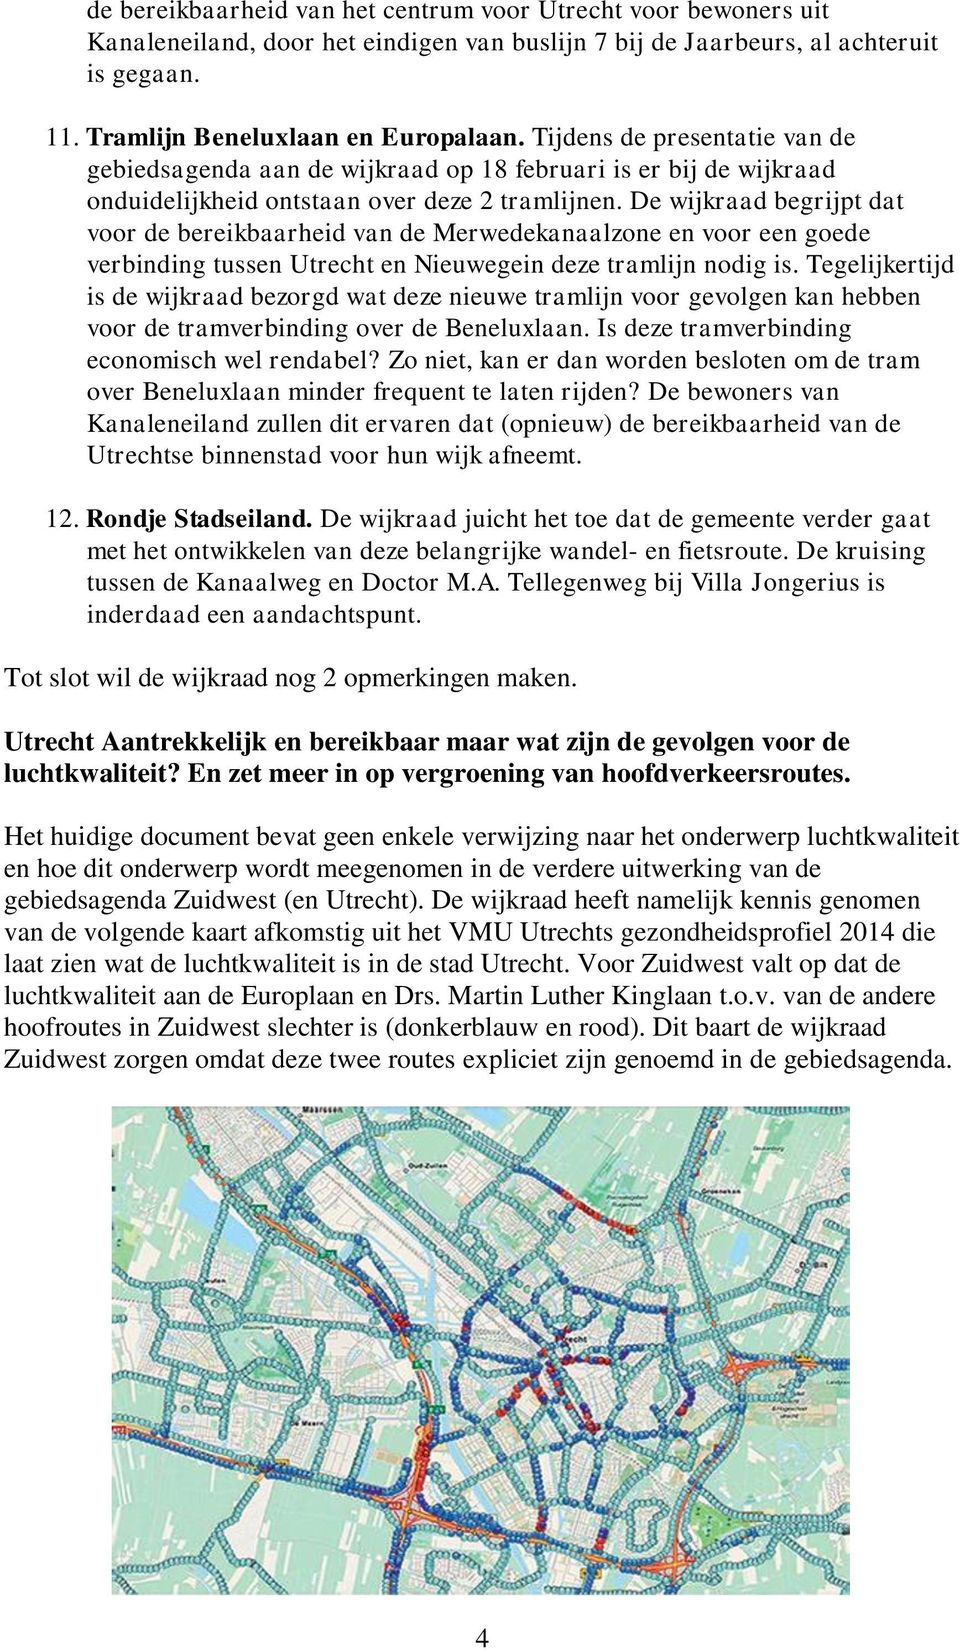 De wijkraad begrijpt dat voor de bereikbaarheid van de Merwedekanaalzone en voor een goede verbinding tussen Utrecht en Nieuwegein deze tramlijn nodig is.